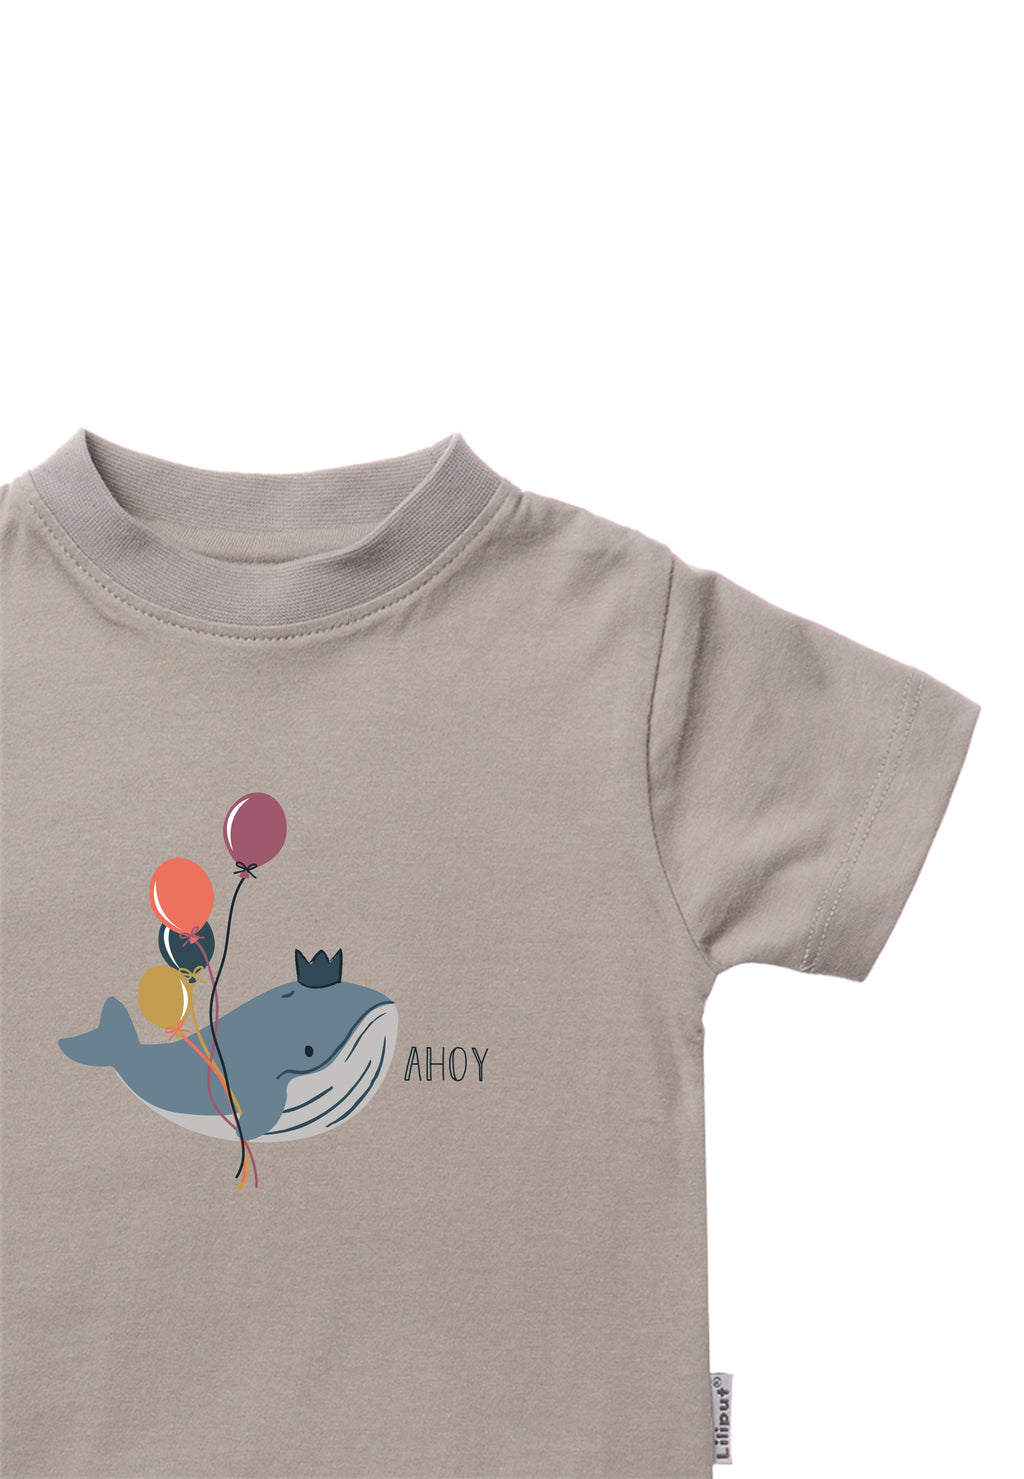 T-Shirt für von Baby und Liliput Liliput – Kleinkind